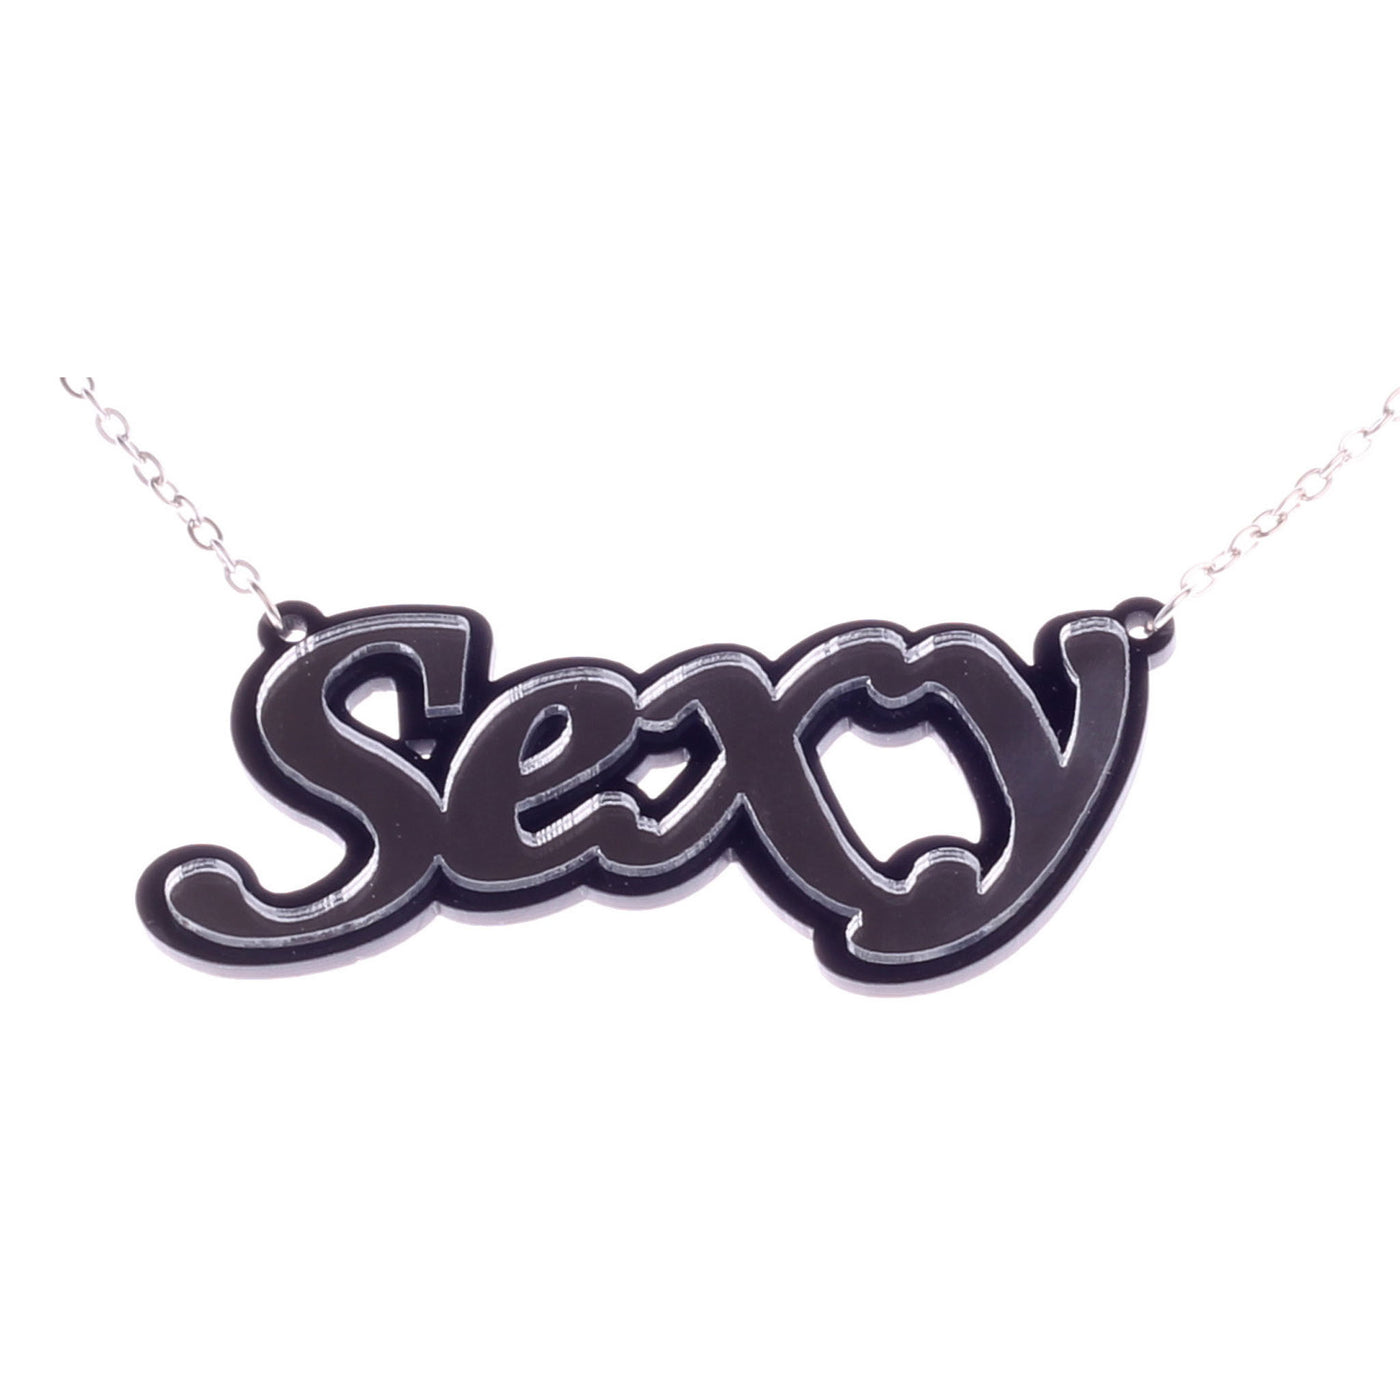 Sexy pendant